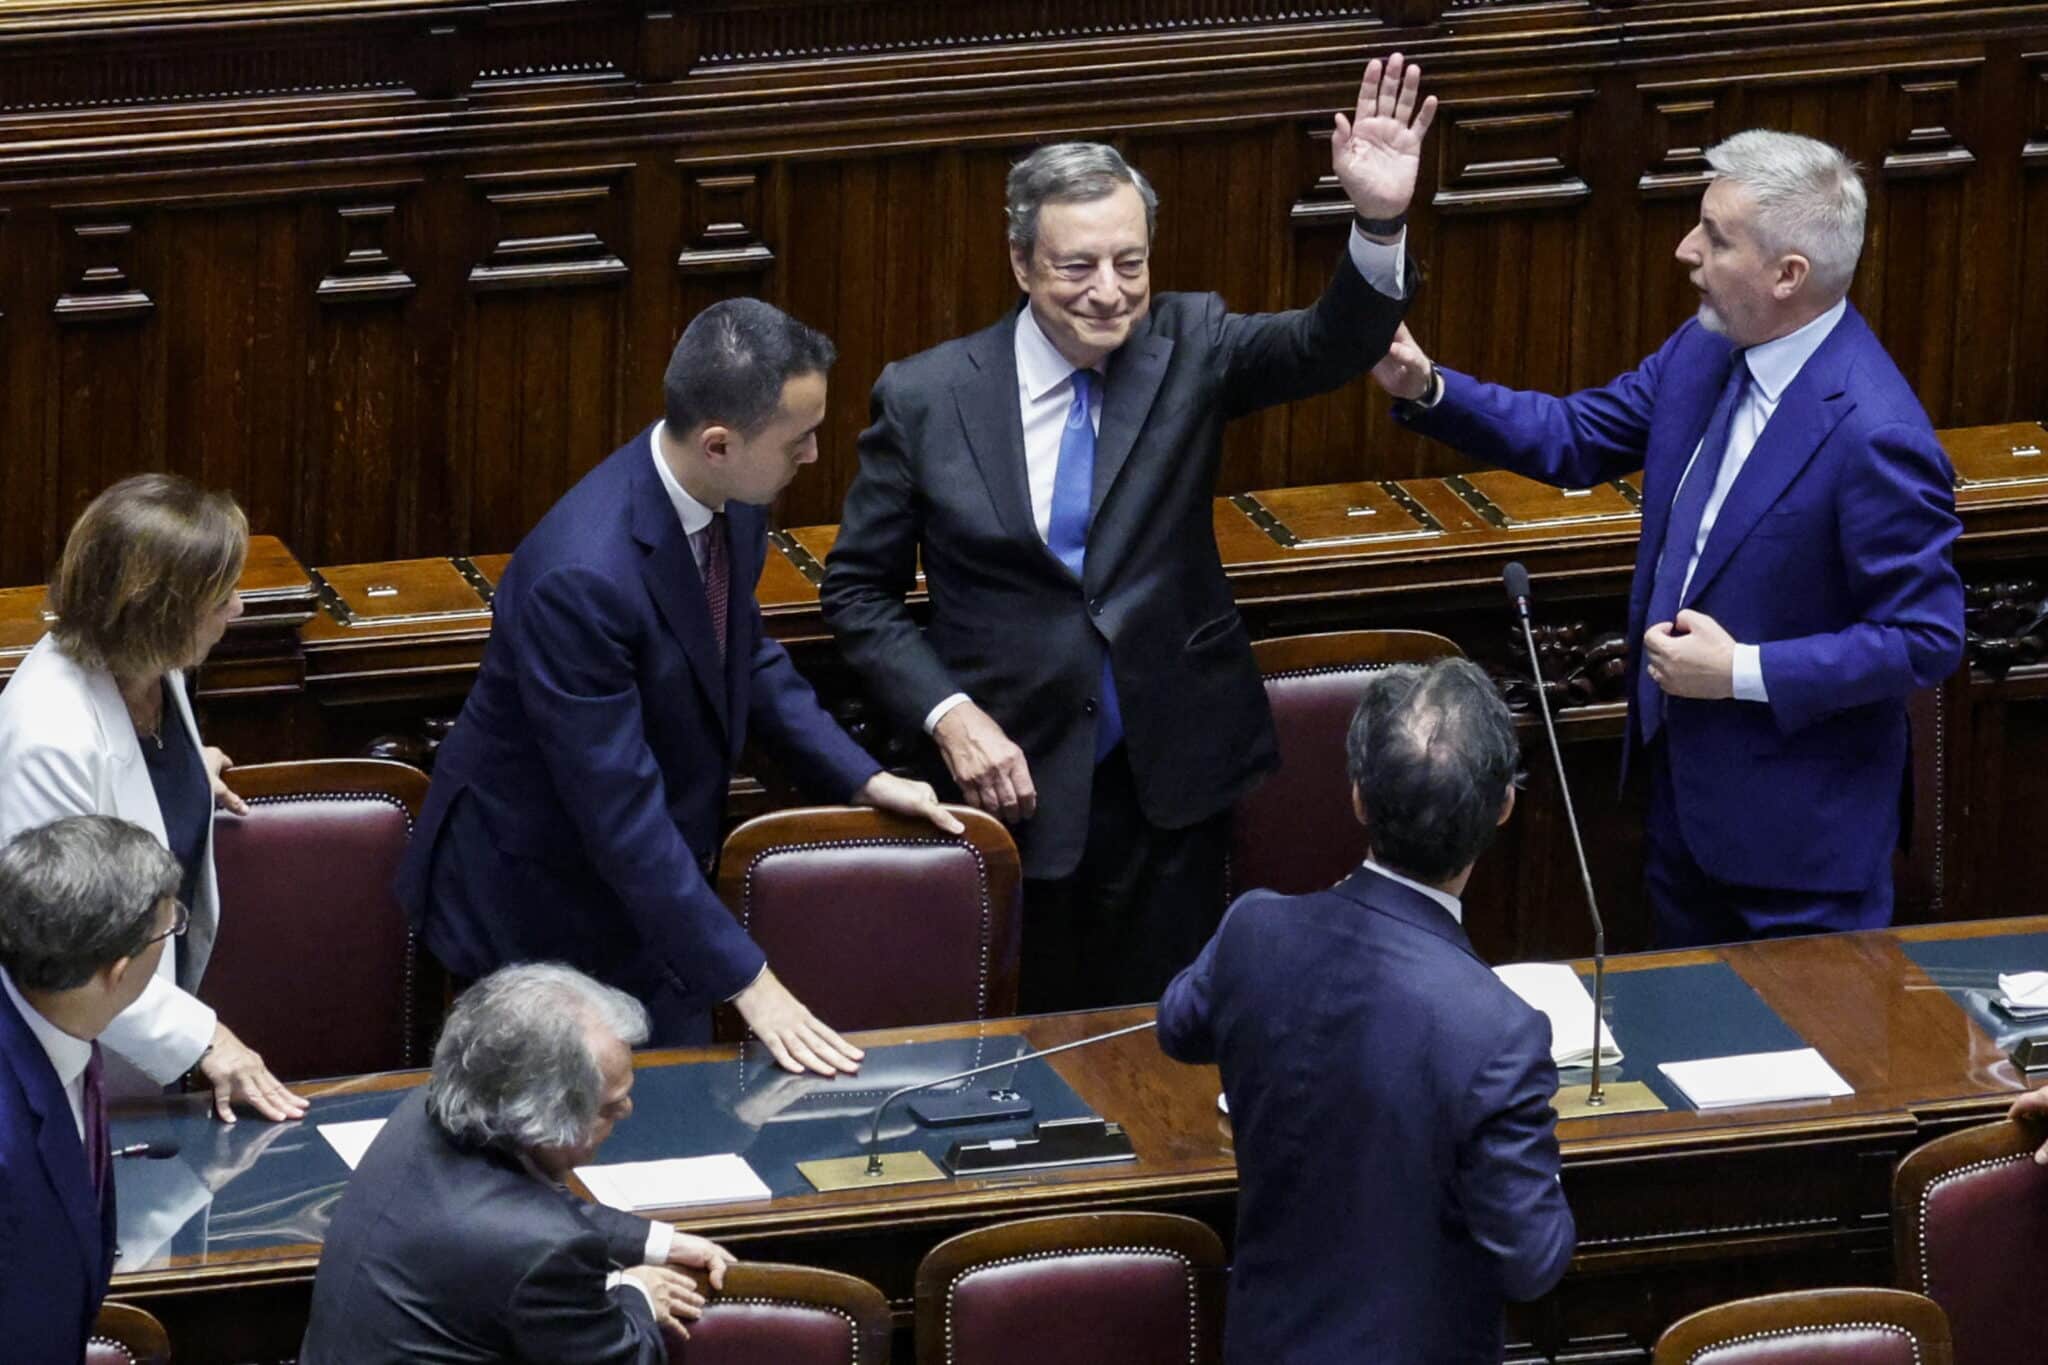 La dimisión de Draghi aboca a Italia a elecciones anticipadas el 25 de septiembre